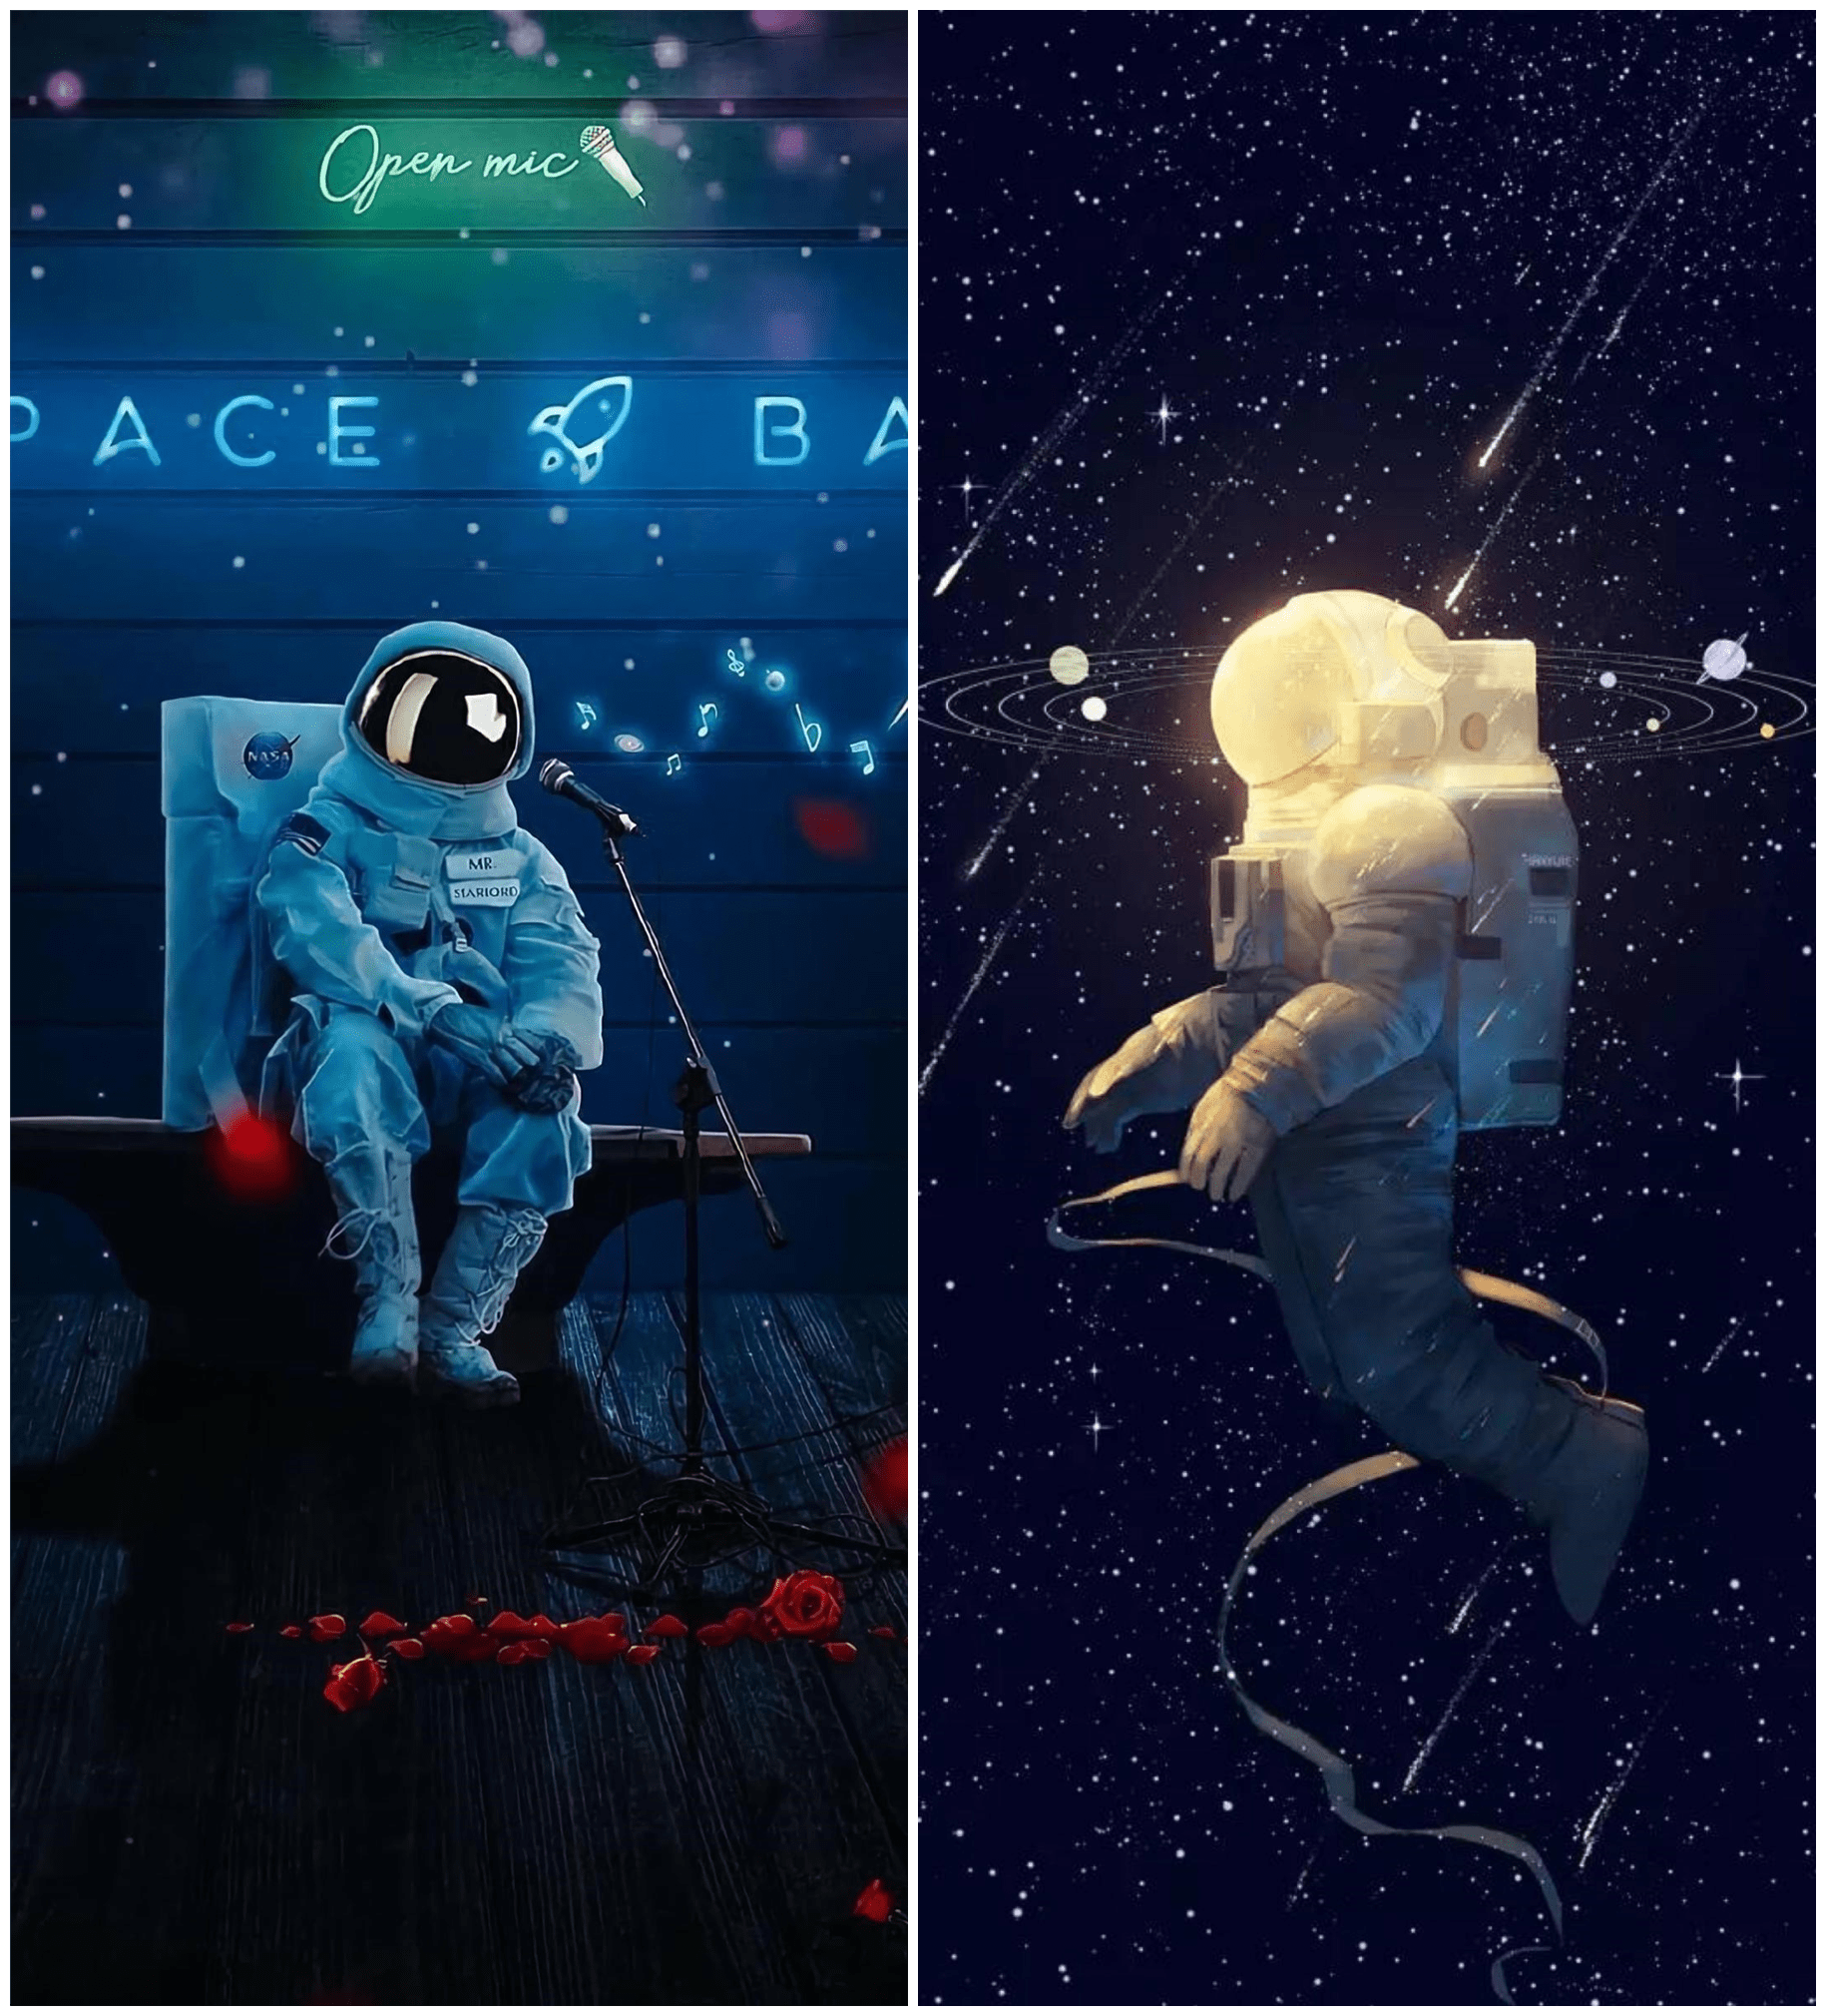 壁纸丨高清太空人壁纸,每个人都想当宇航员